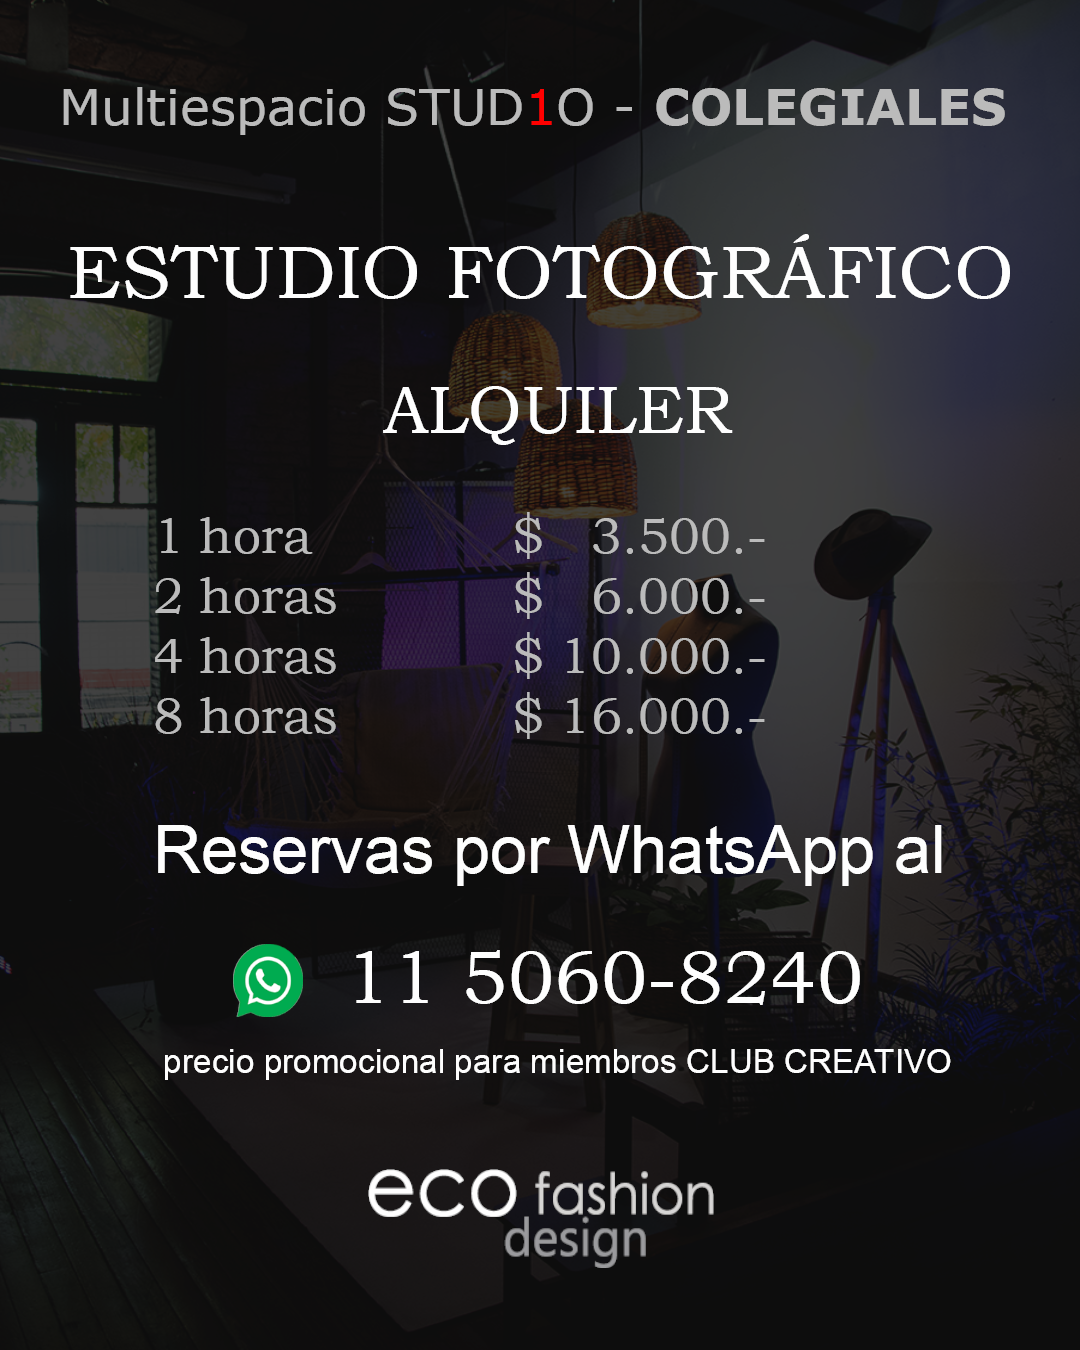 Multiespacio Studio 1 - Alquiler estudio fotográfico